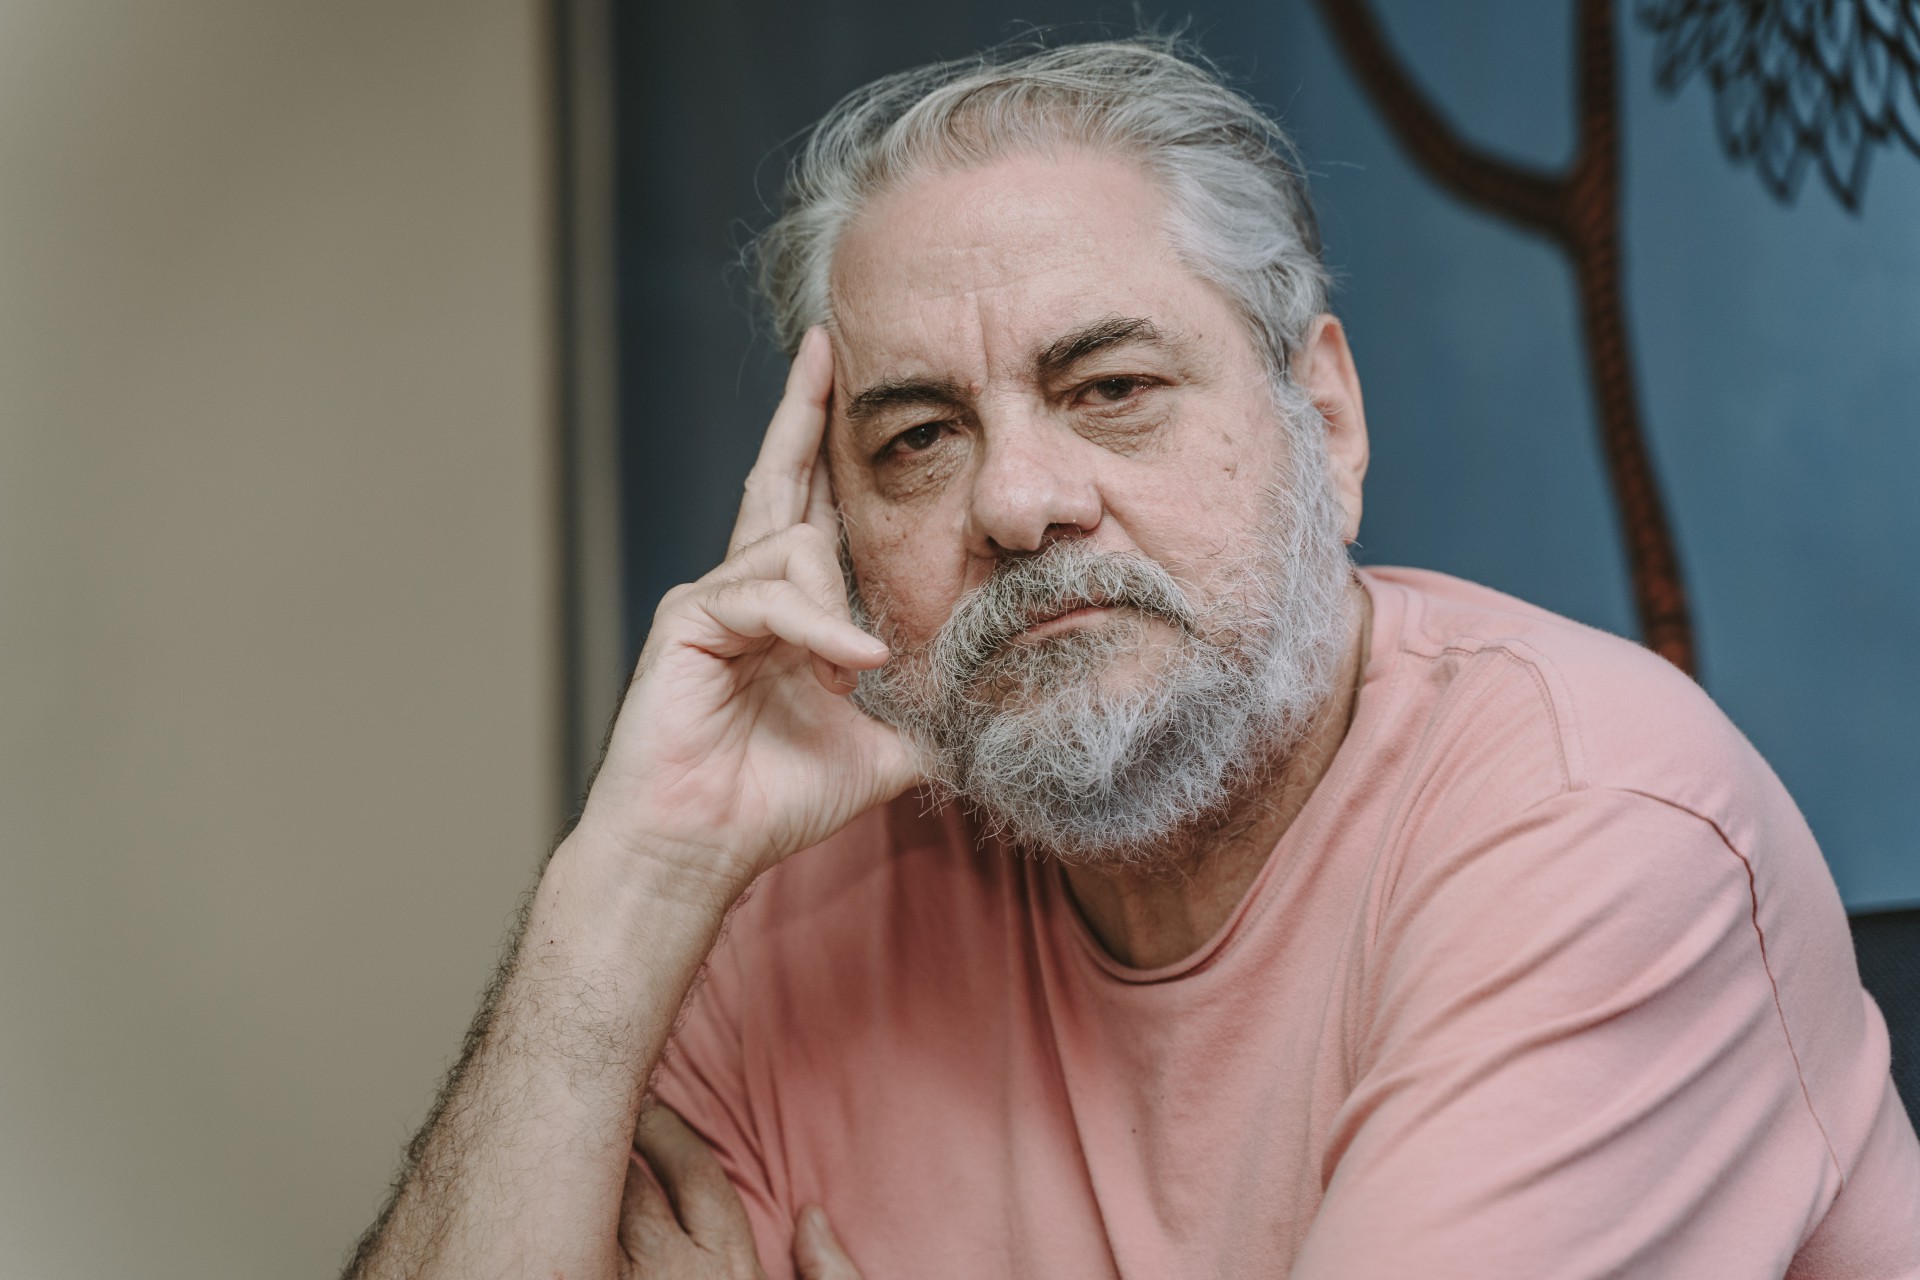 Paulo Sérgio Bessa Linhares é um antropólogo, doutor em sociologia, jornalista e professor cearense (Foto: JULIO CAESAR)